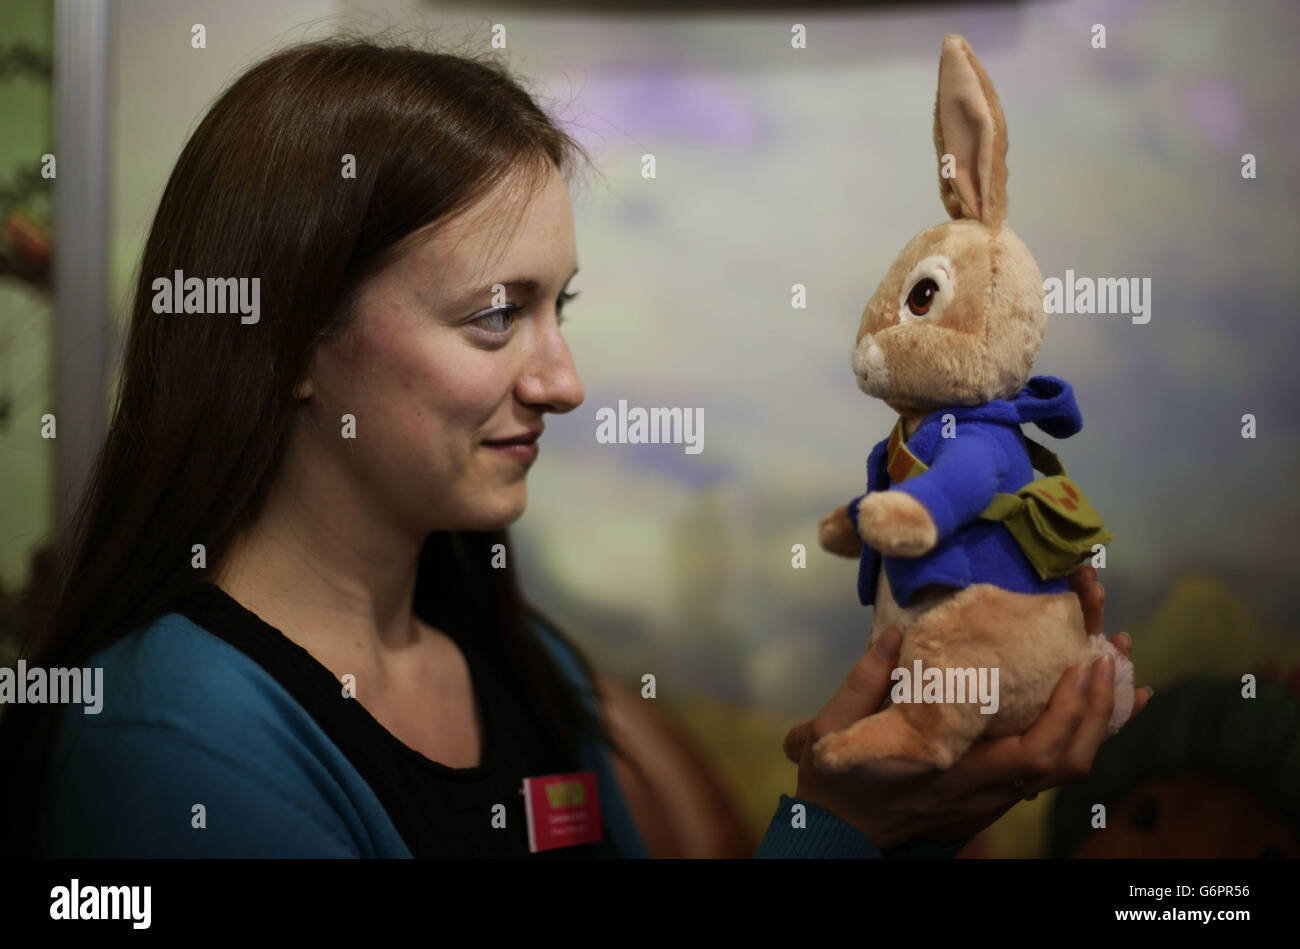 Catherine Scott, directrice de marque de Vivid, tenant une poupée de jouet doux de Peter Rabbit, pendant le jour de presse de la foire annuelle du jouet - où plus de 280 entreprises lancent des milliers de nouveaux produits aux acheteurs et aux détaillants - à Olympia à Londres. Banque D'Images